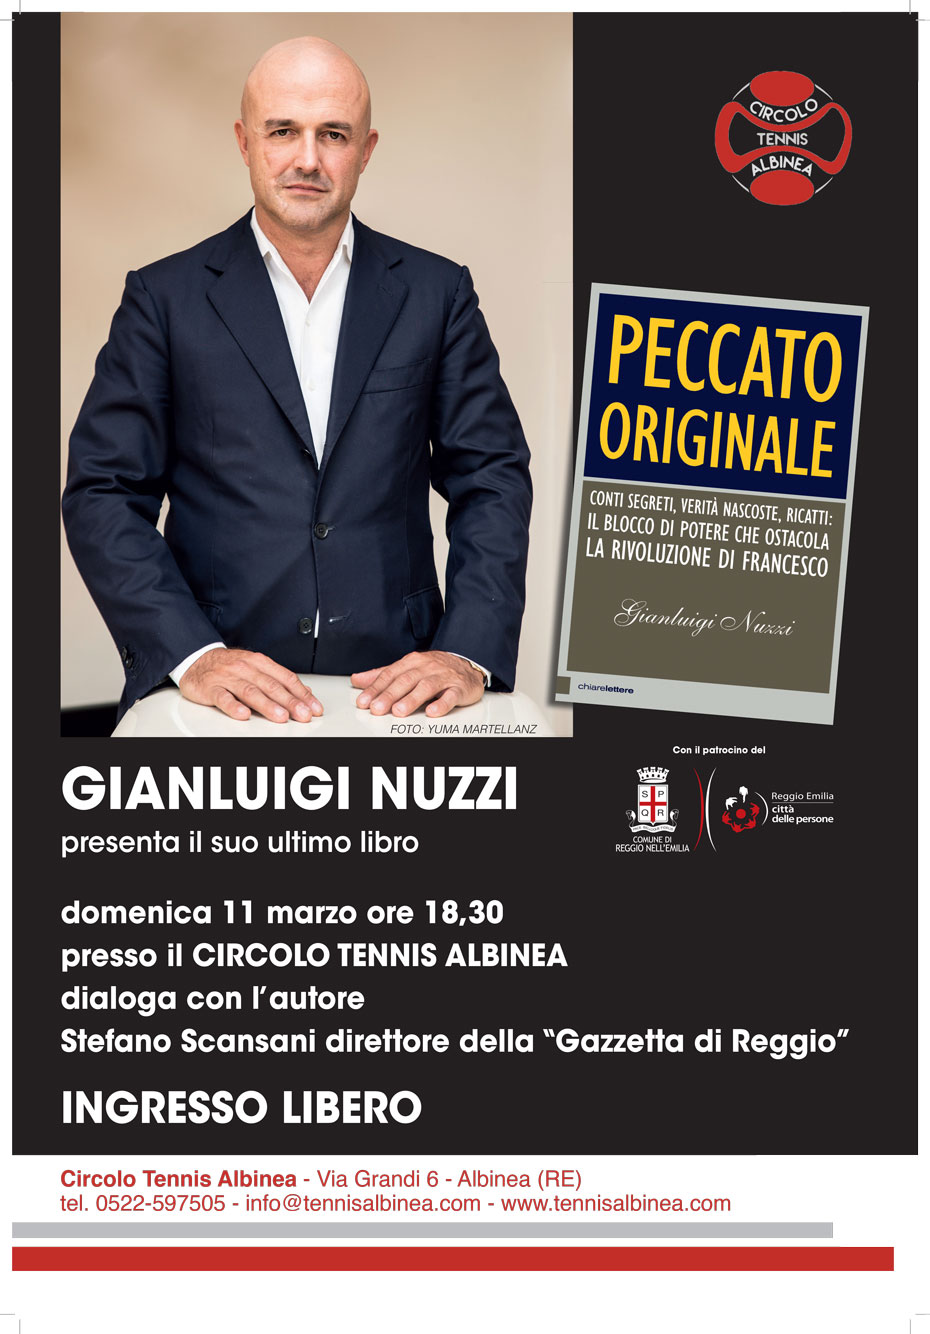 Gianluigi Nuzzi presenta il suo ultimo libro Peccato Originale